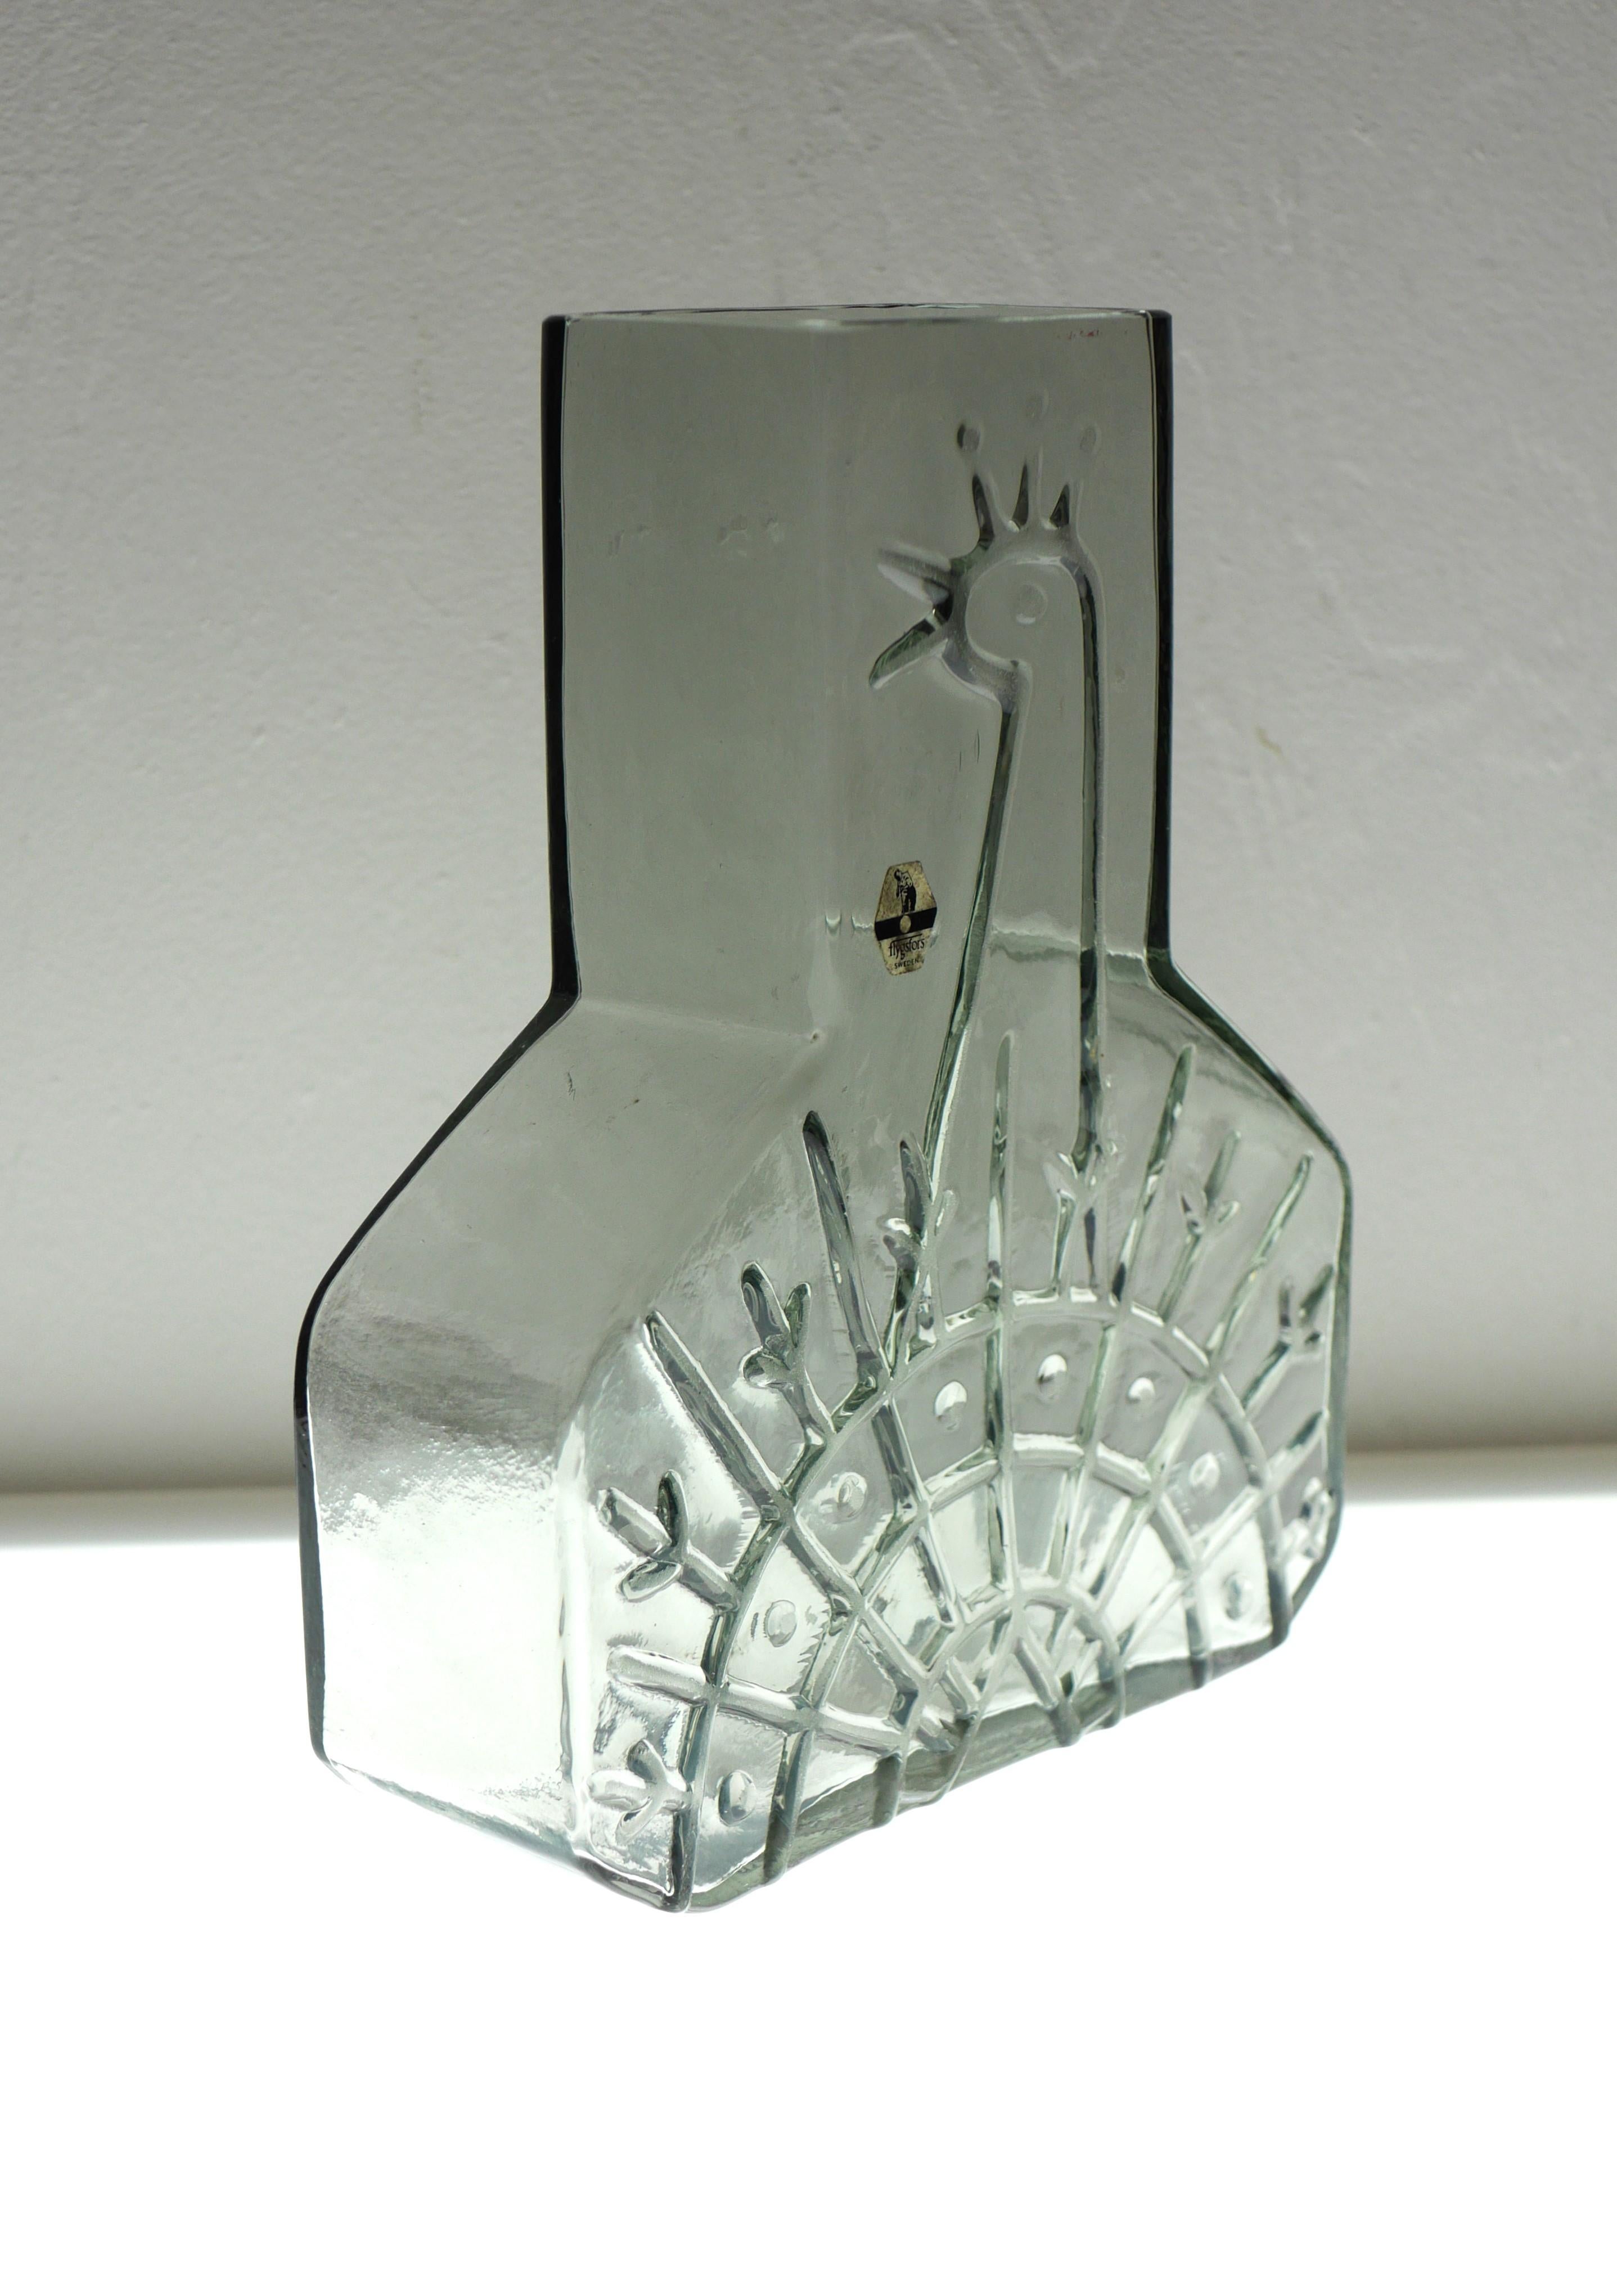 Jarrón de vidrio artístico escandinavo con forma de pavo real realizado y firmado por Wiktor Berndt para Flygsfors, Suecia. Se trata de una asombrosa obra de arte hecha a mano, escultural y de líneas limpias, con un hermoso pavo real estilizado, que